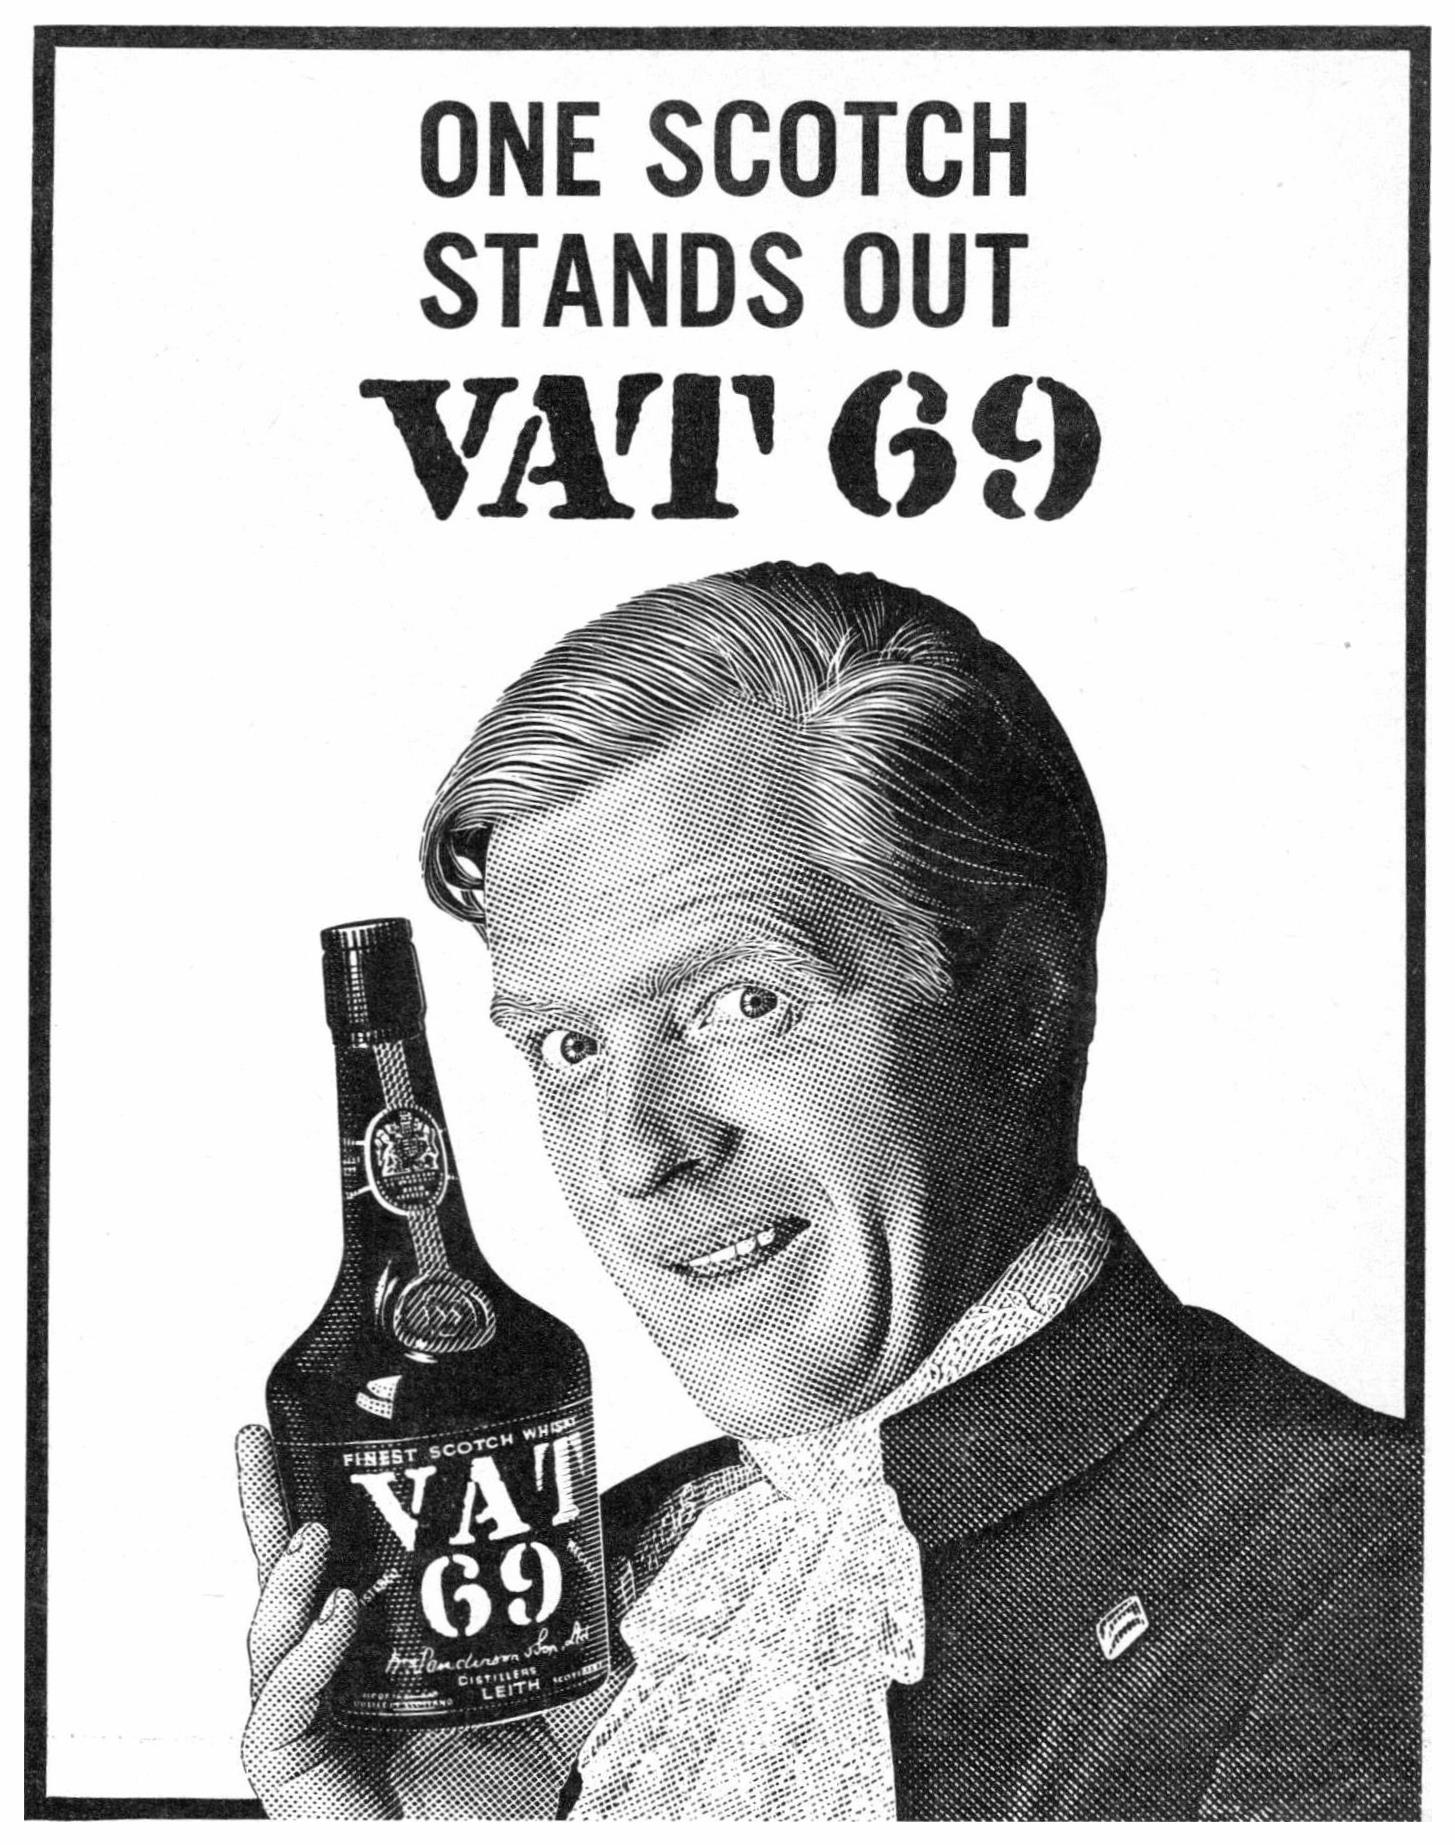 VAT69 1963 0.jpg